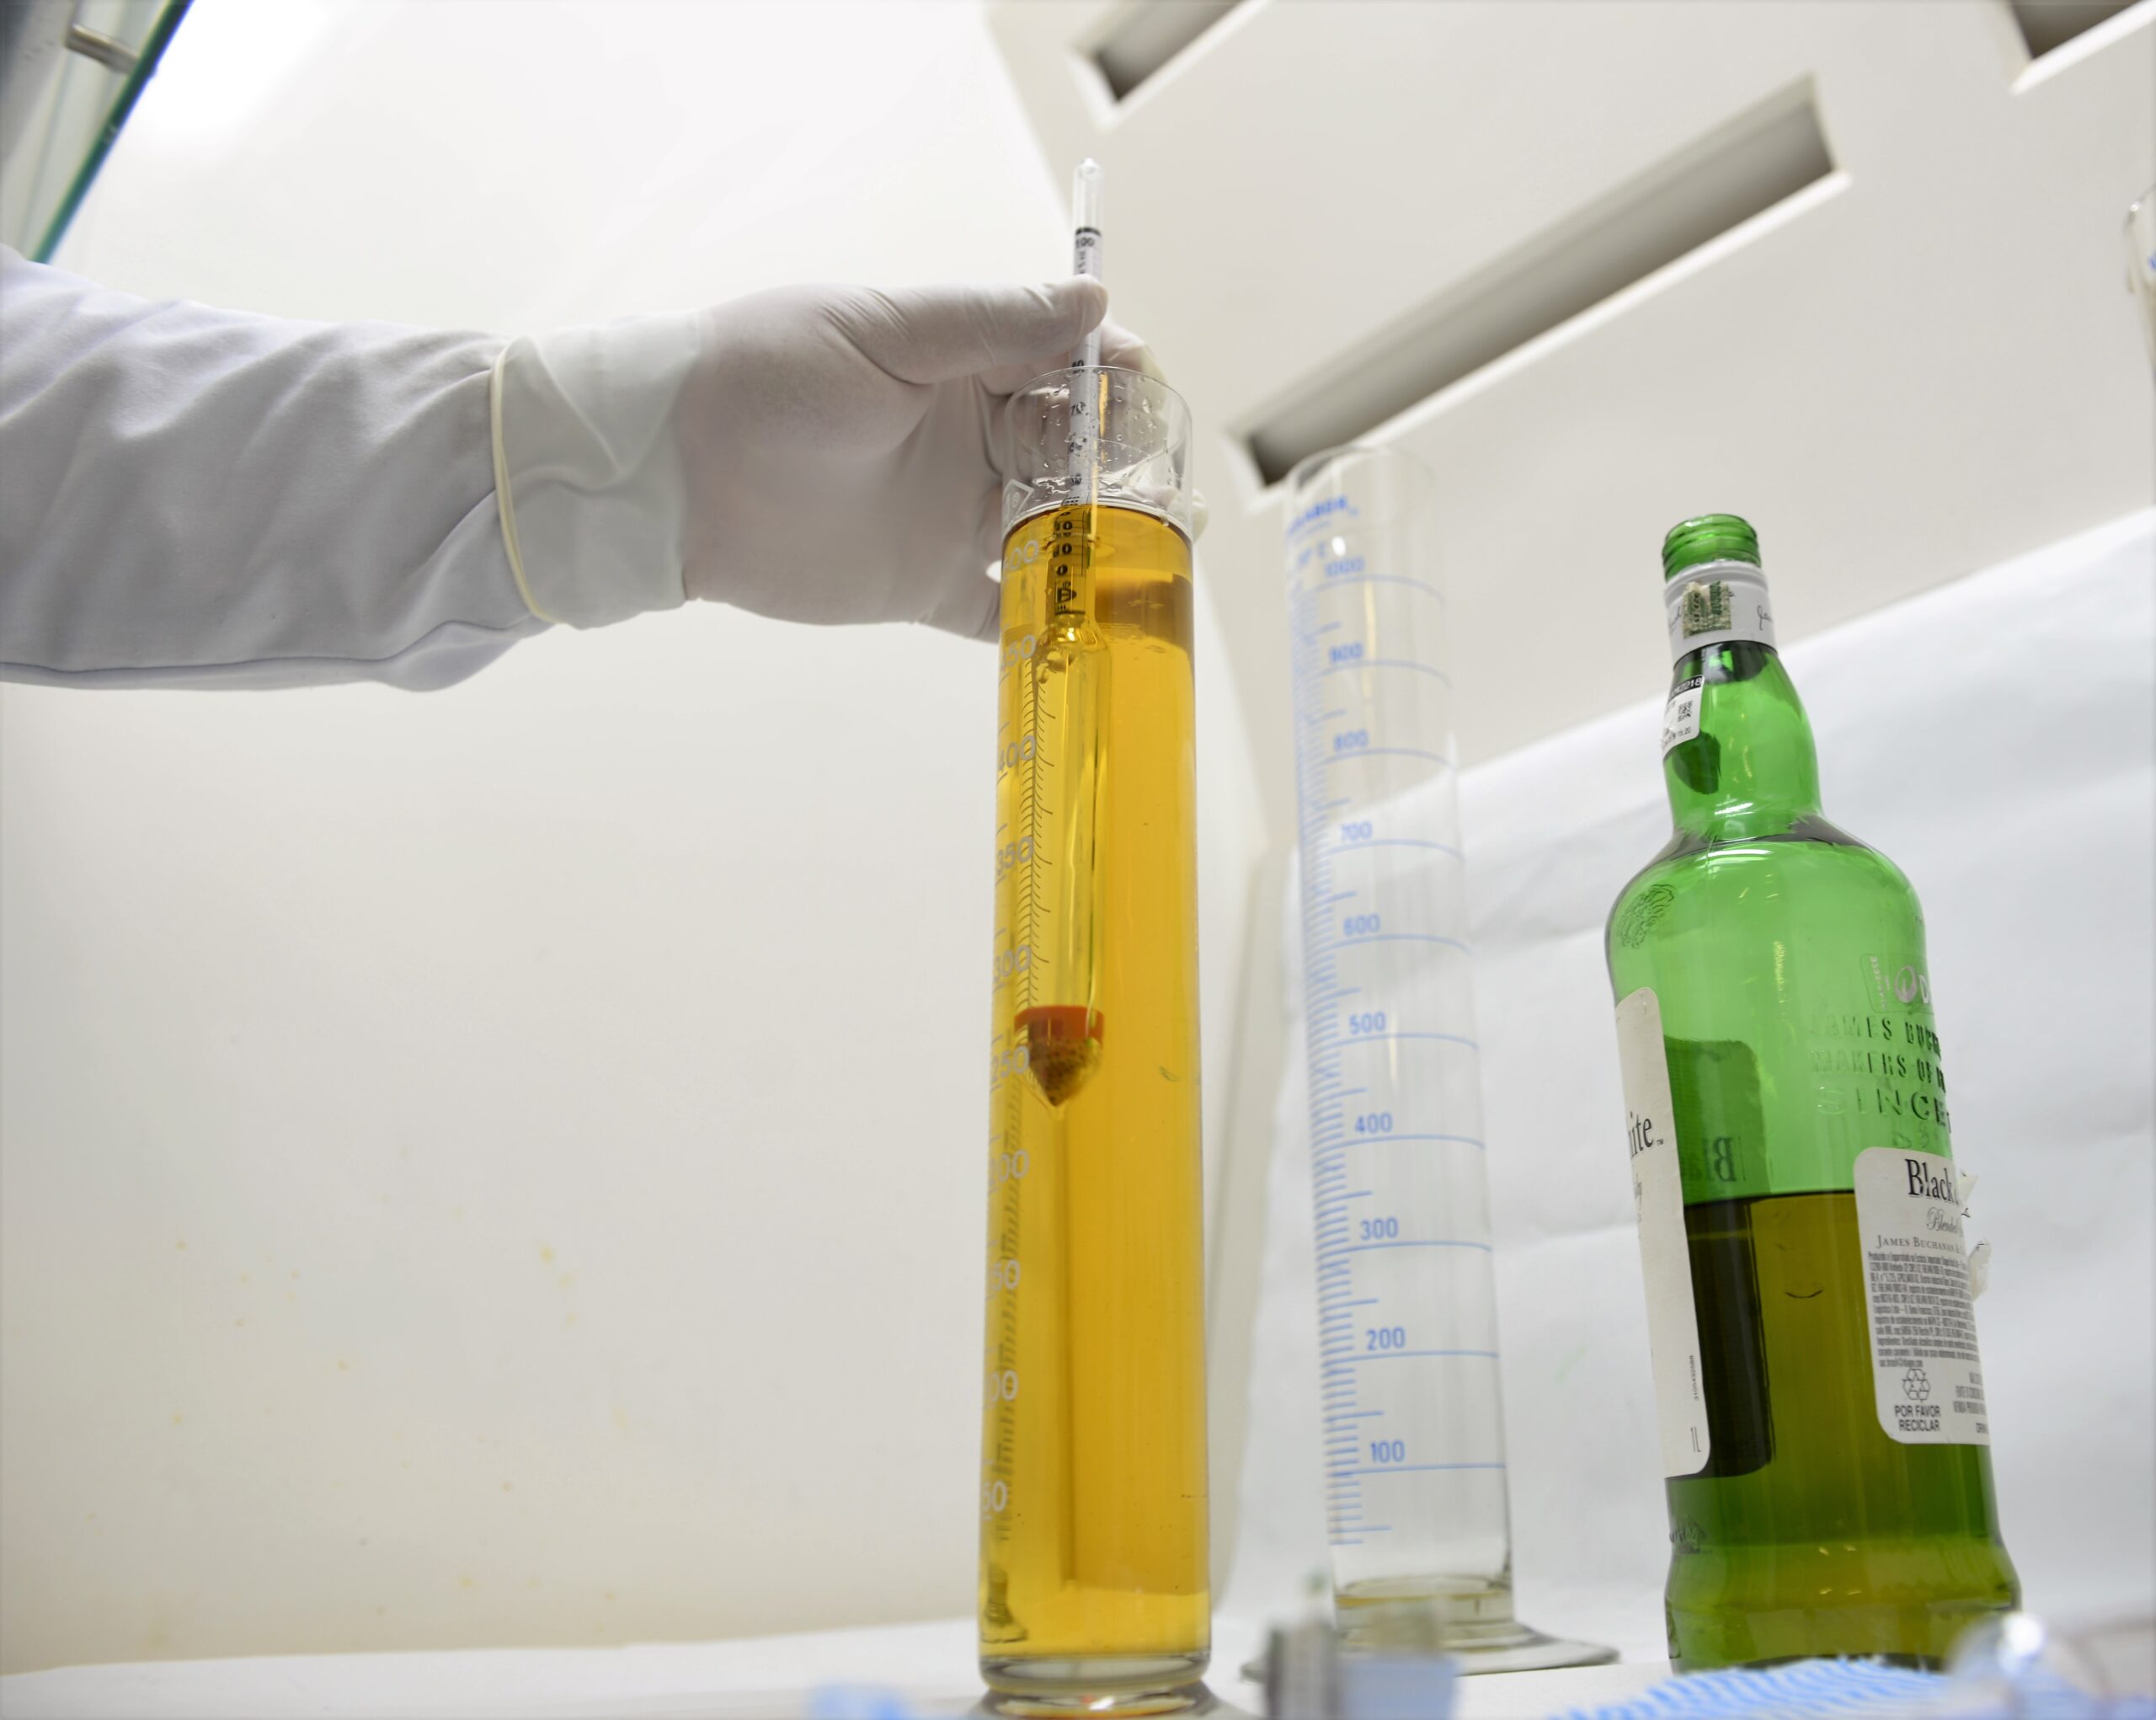 Teste em cerveja falsificada ajuda a identificar componentes que causam risco à saúde | Foto: Divulgação/SSPDS/Ceará